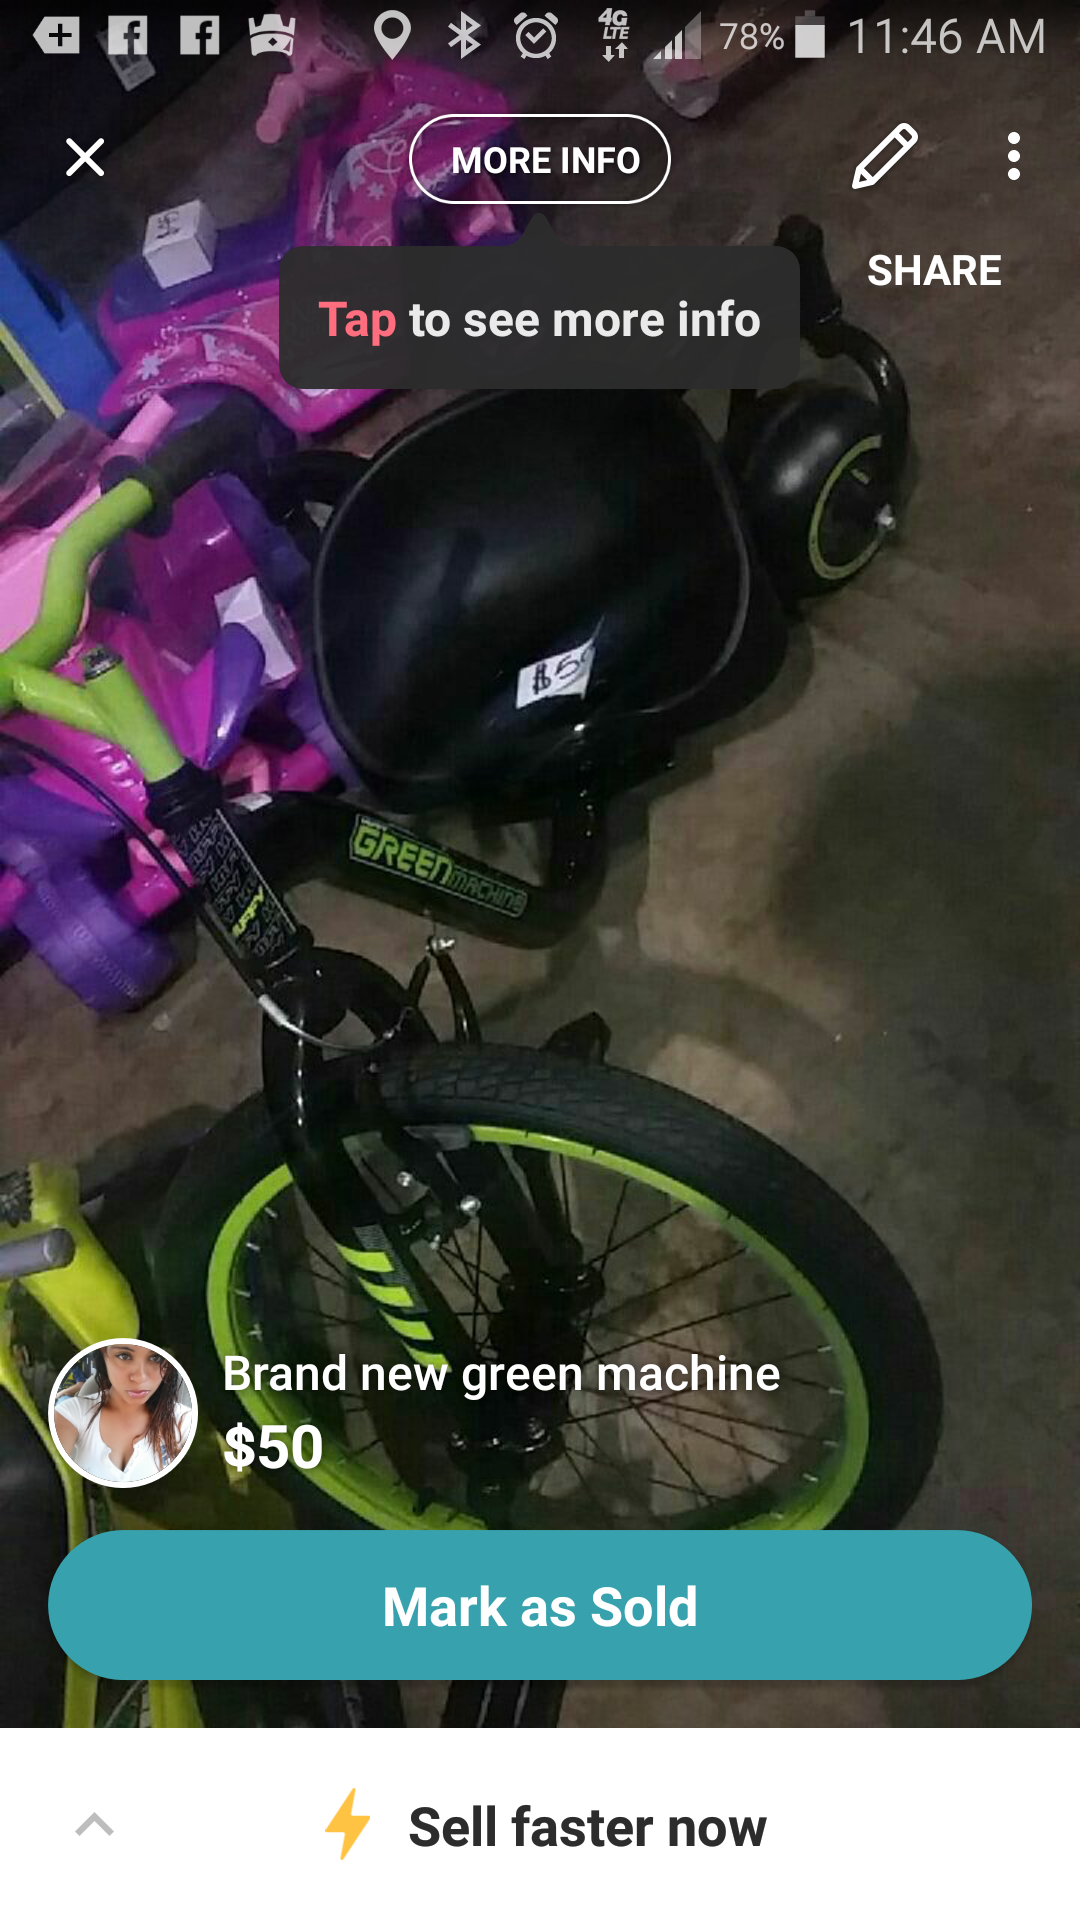 Brand new green machine